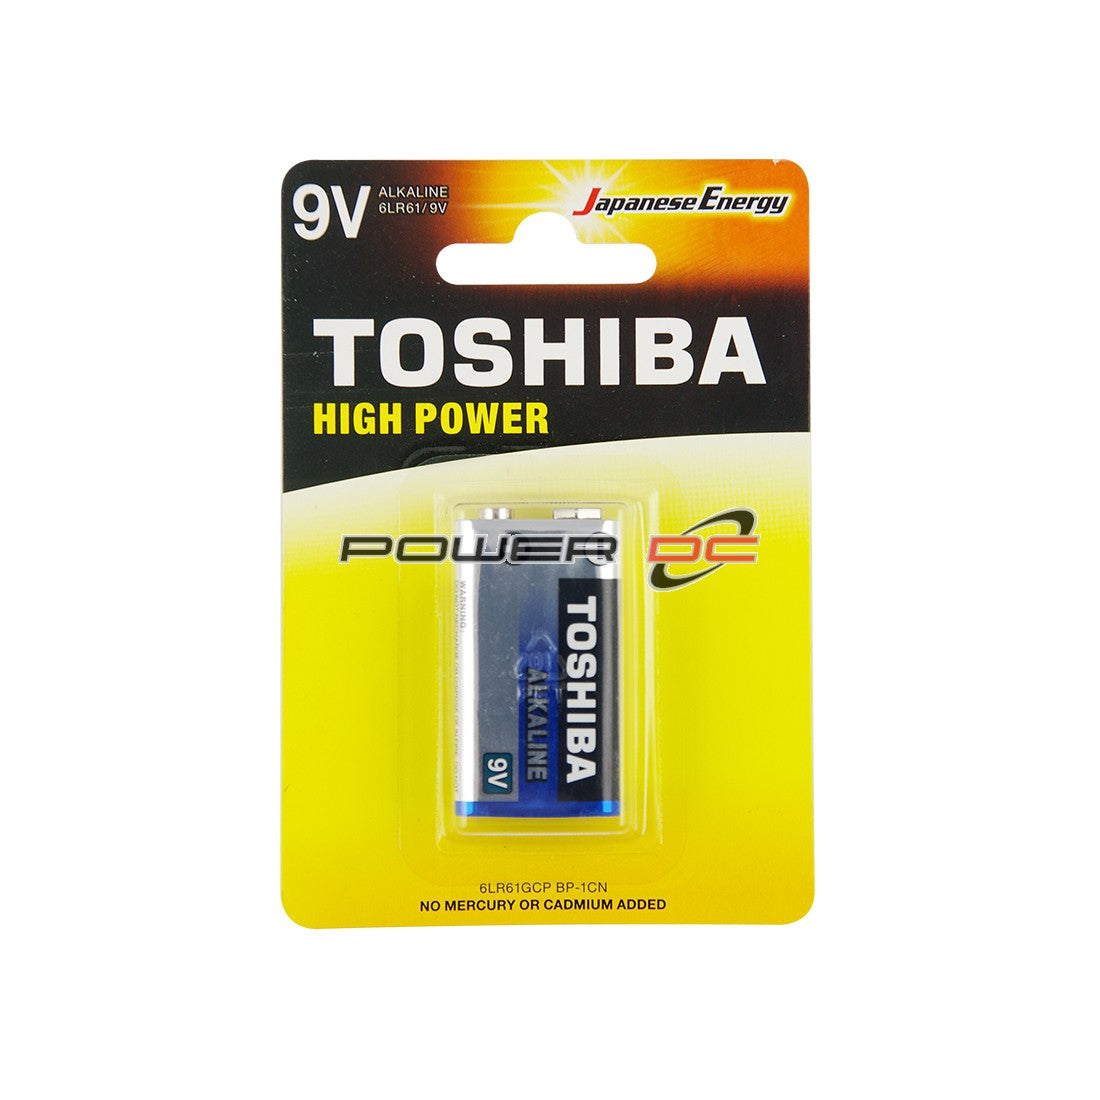 9V Alkaline Battery by Toshiba